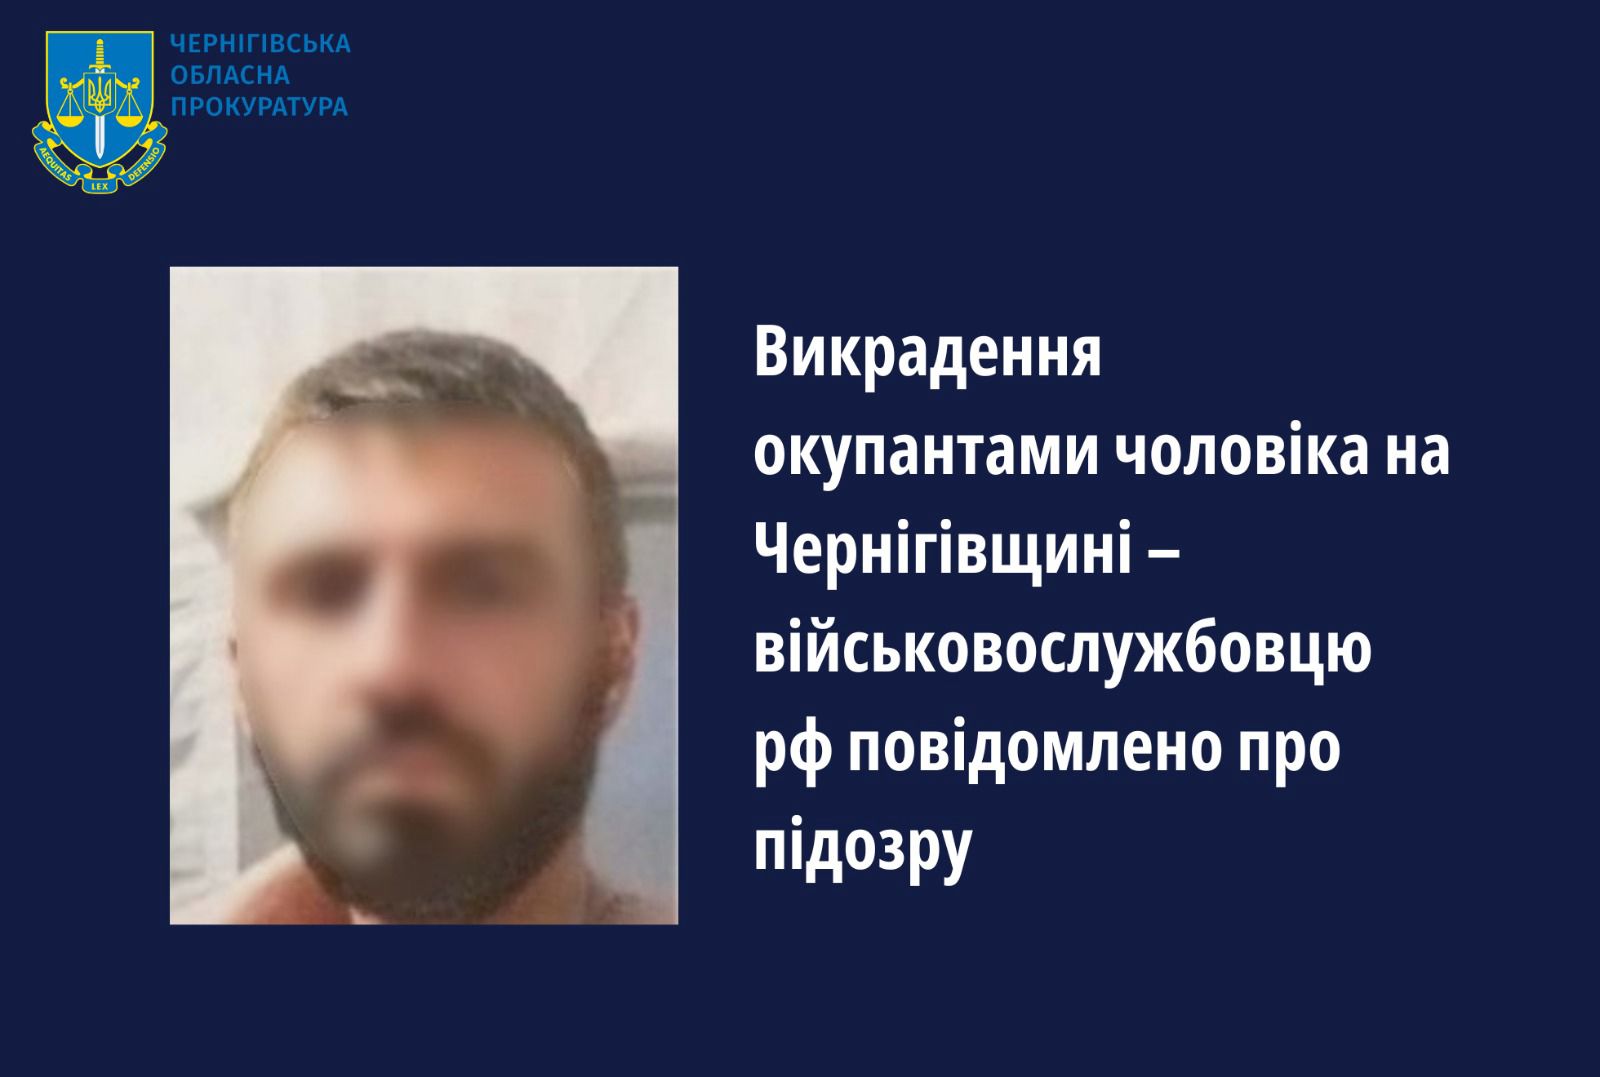 Військовослужбовцю рф повідомлено про підозру у викраденні мирного жителя на Чернігівщині